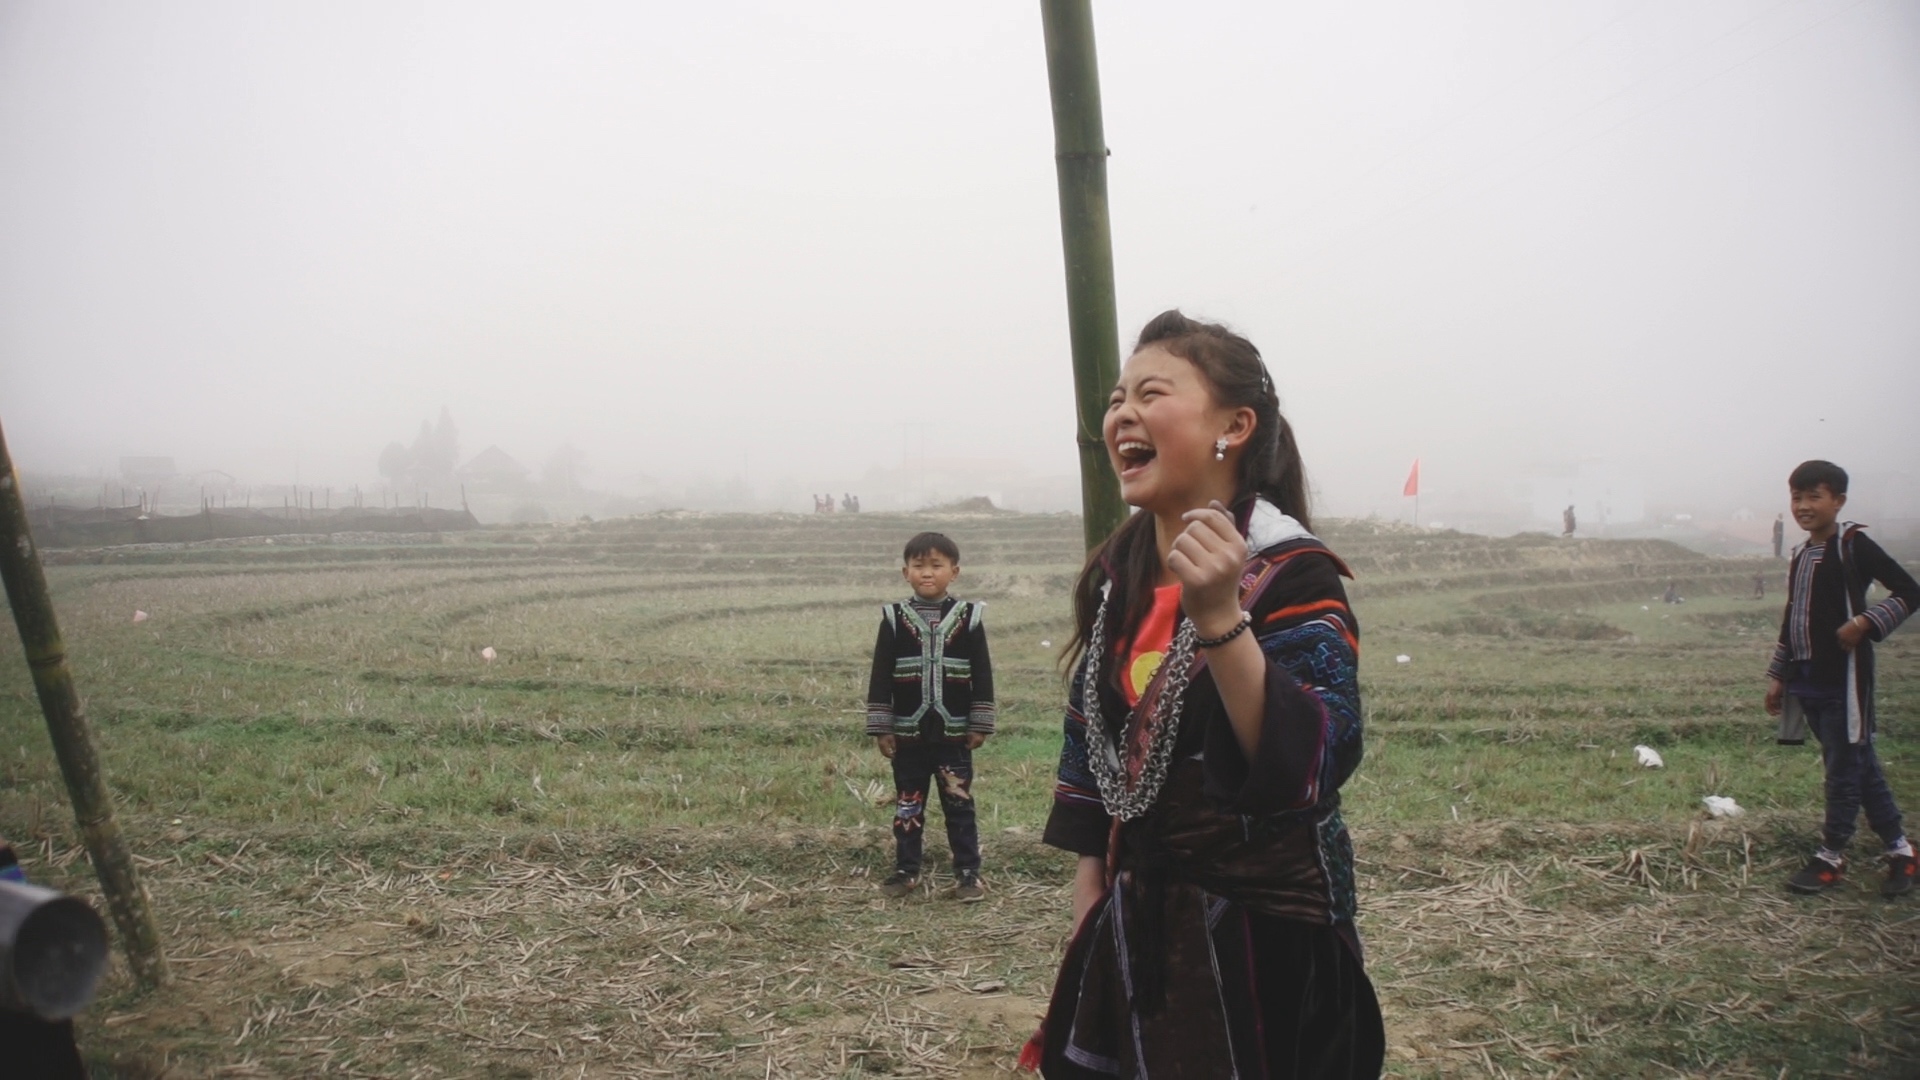 Đoạn giới thiệu độc quyền cho phim tài liệu nổi tiếng Những đứa con của sương mù của Hà Lệ Diễm, khám phá quá trình trưởng thành ở miền núi Việt Nam